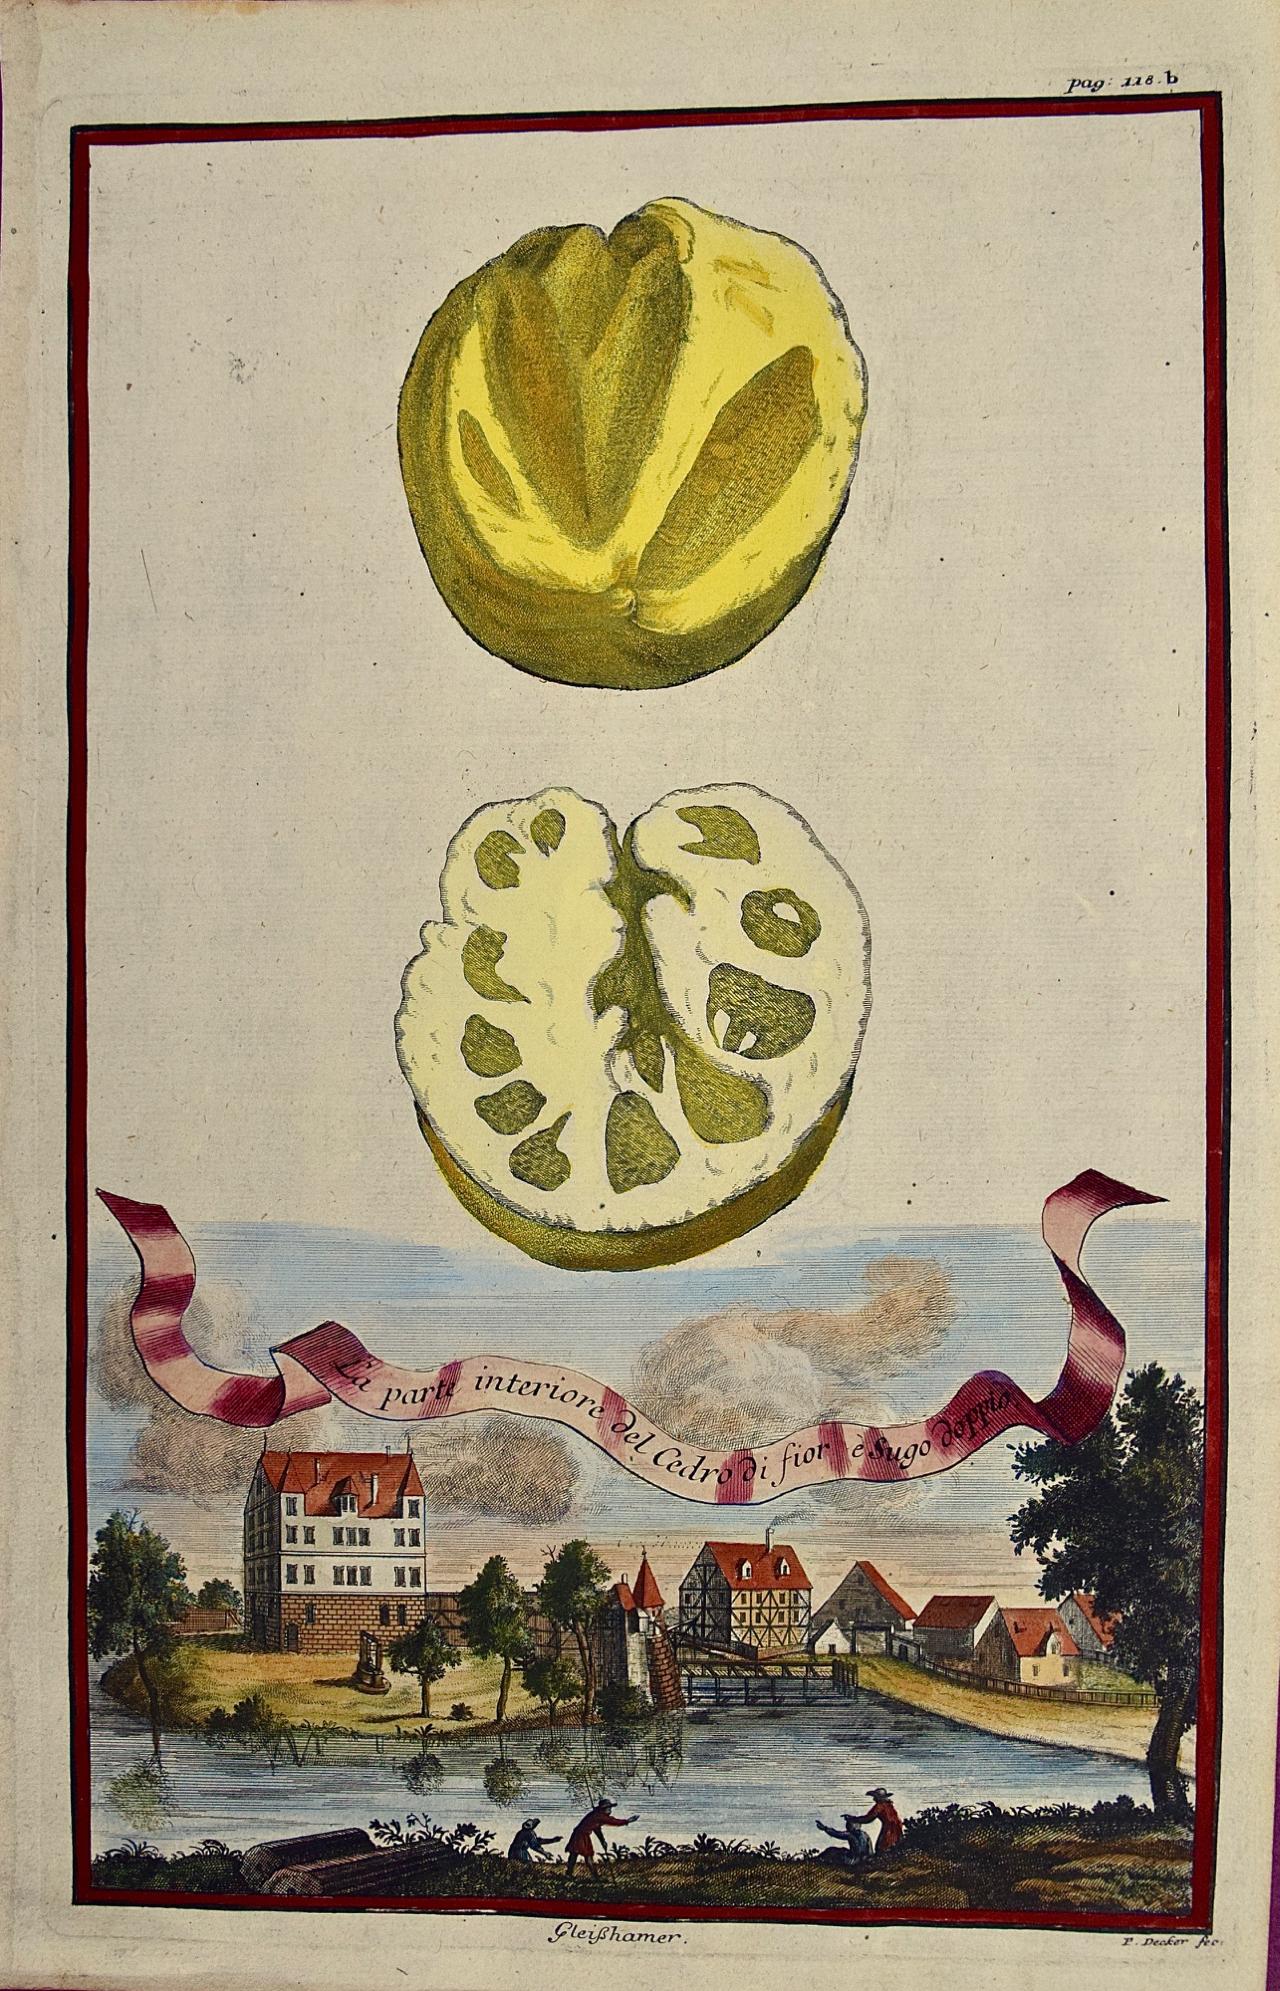 Landscape Print Johan Christoph Volkhamer - Gravure à la main de citrons « La parte interiore » (La partie intérieure) de Volckamer du début du 18e siècle, colorée à la main